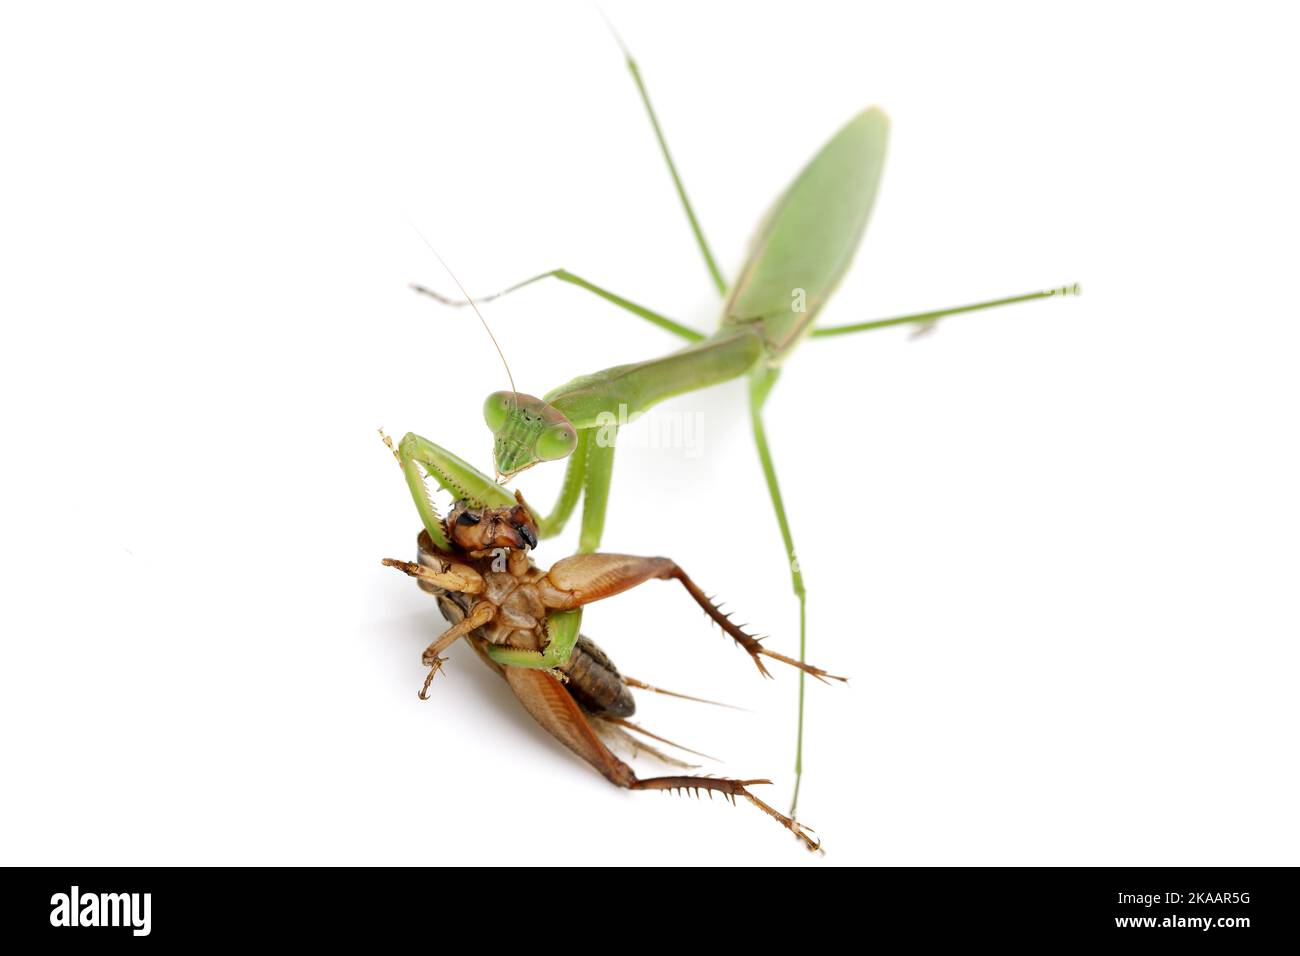 Priant des mantis attrapant une proie, un cricket. Isolé sur fond blanc Banque D'Images